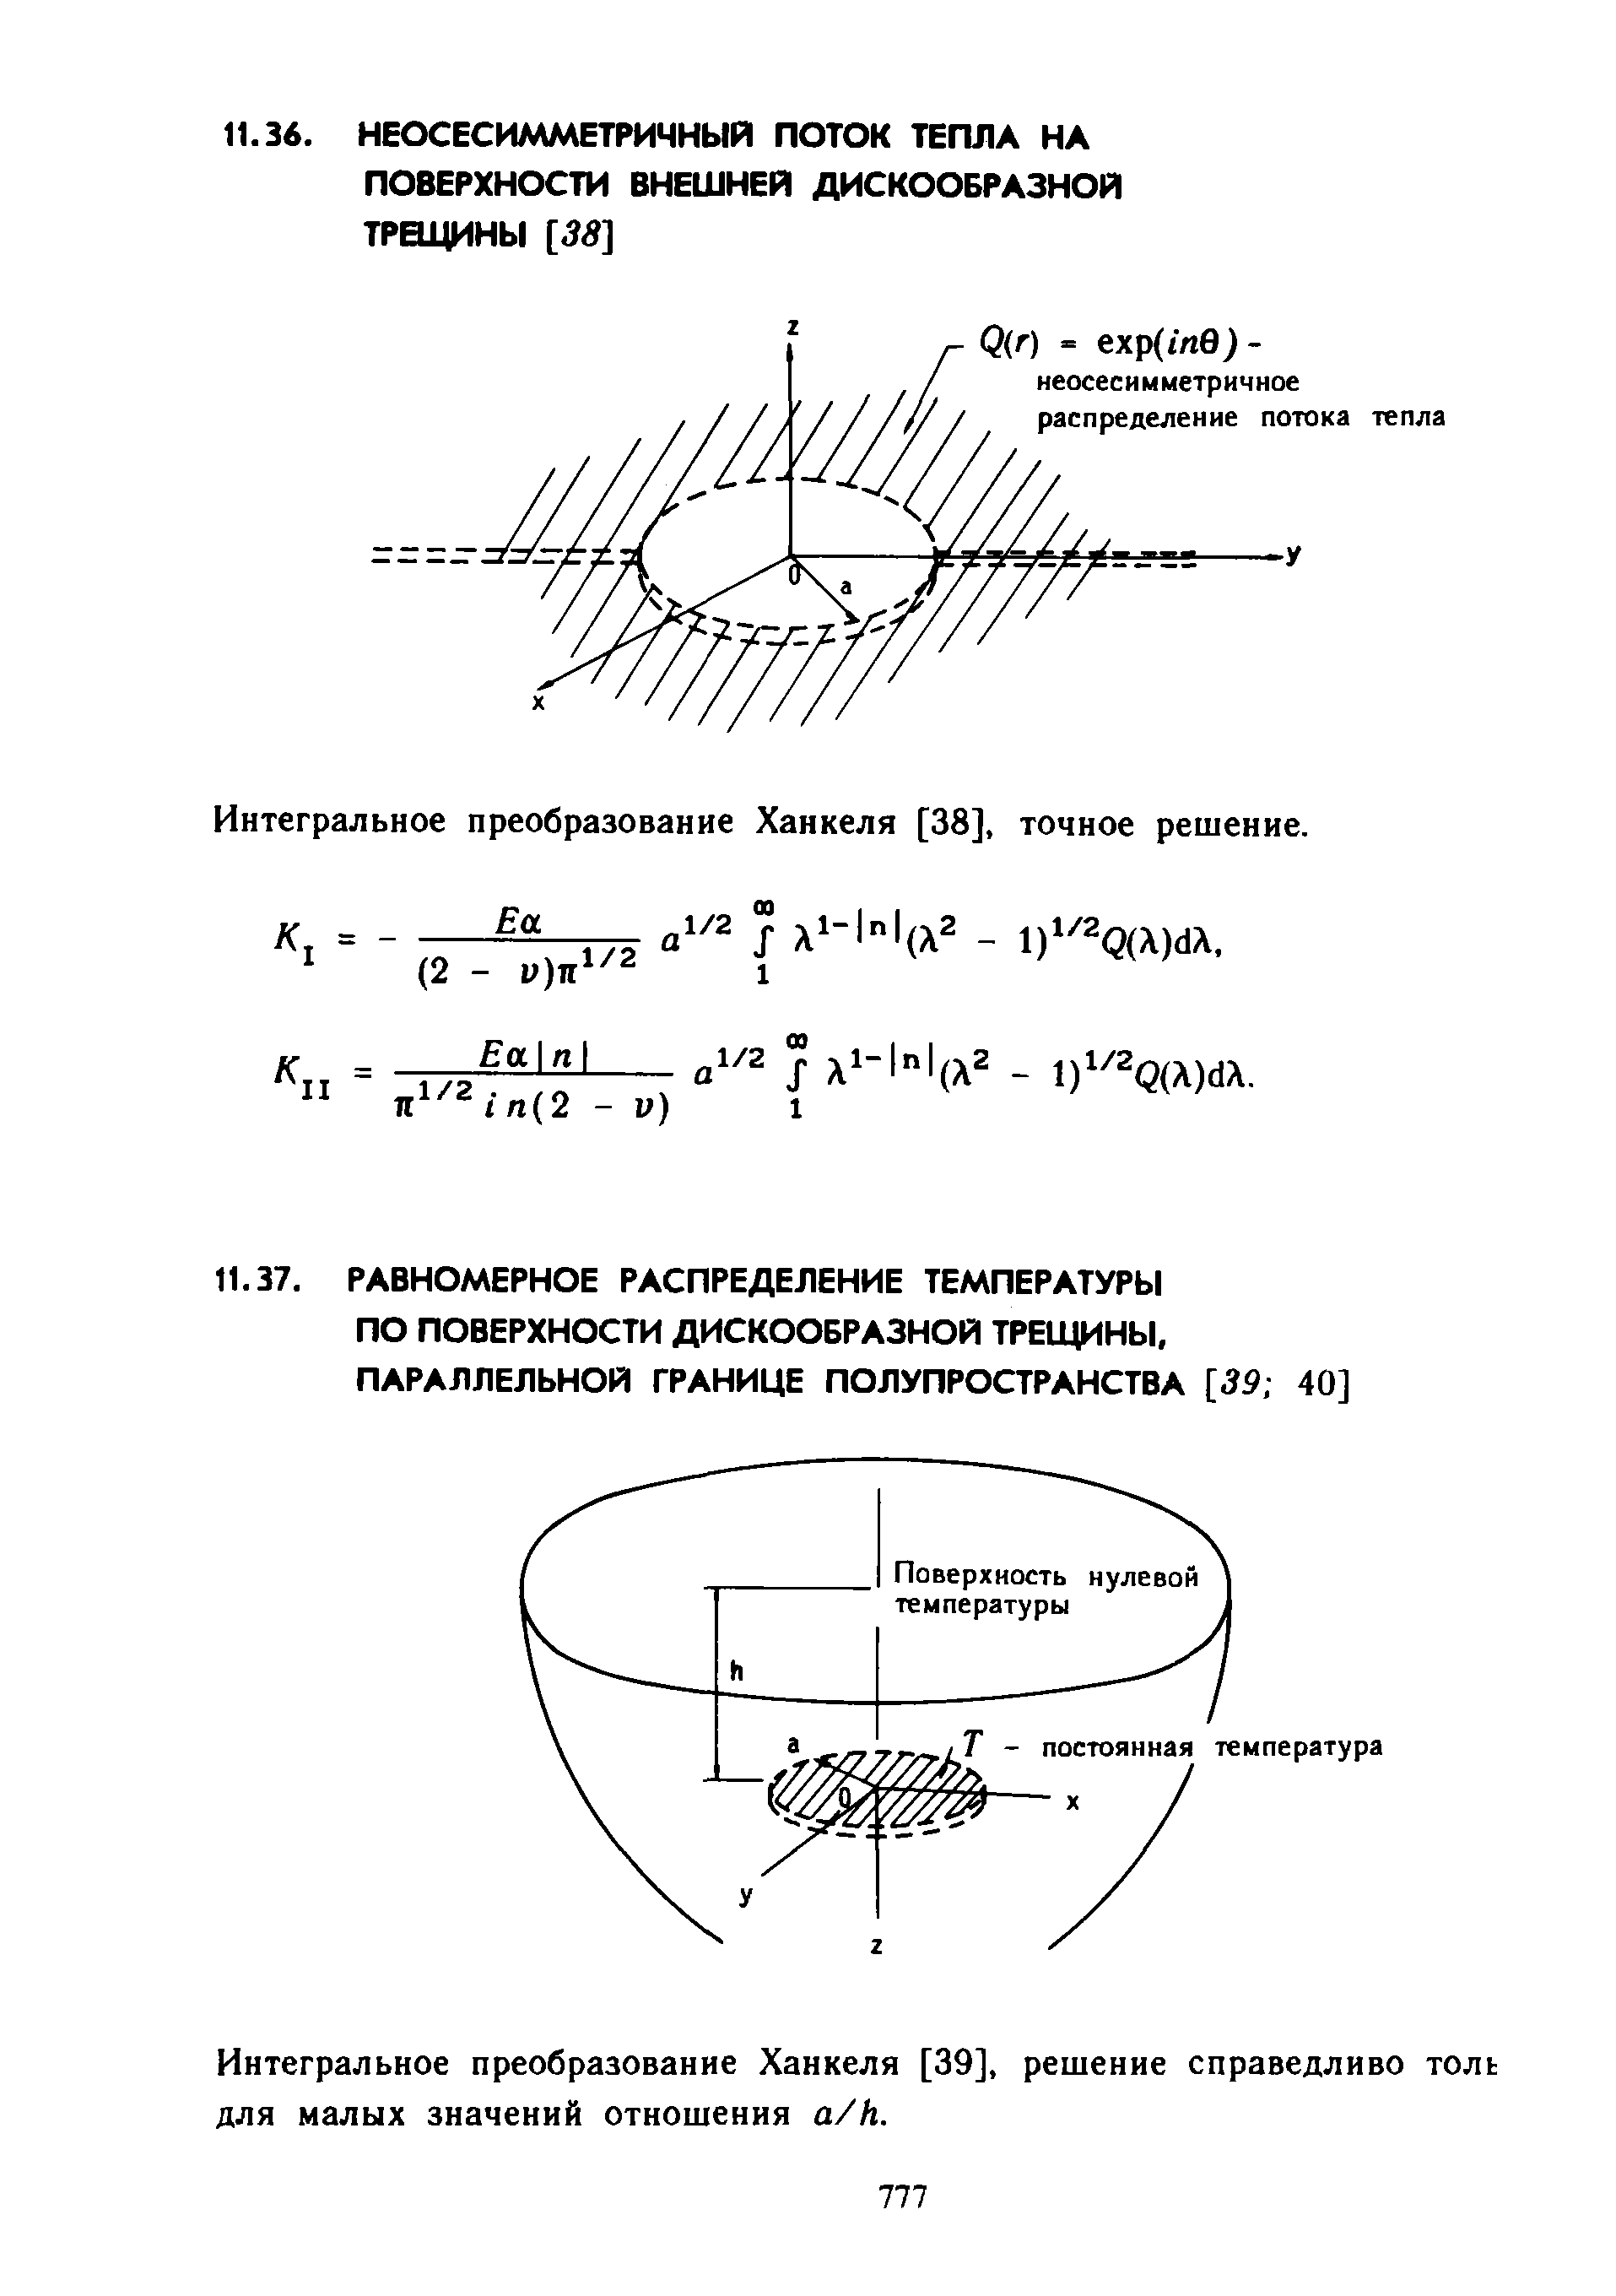 Интегральное преобразование Ханкеля [39], решение справедливо толь для малых значений отношения a/h.
